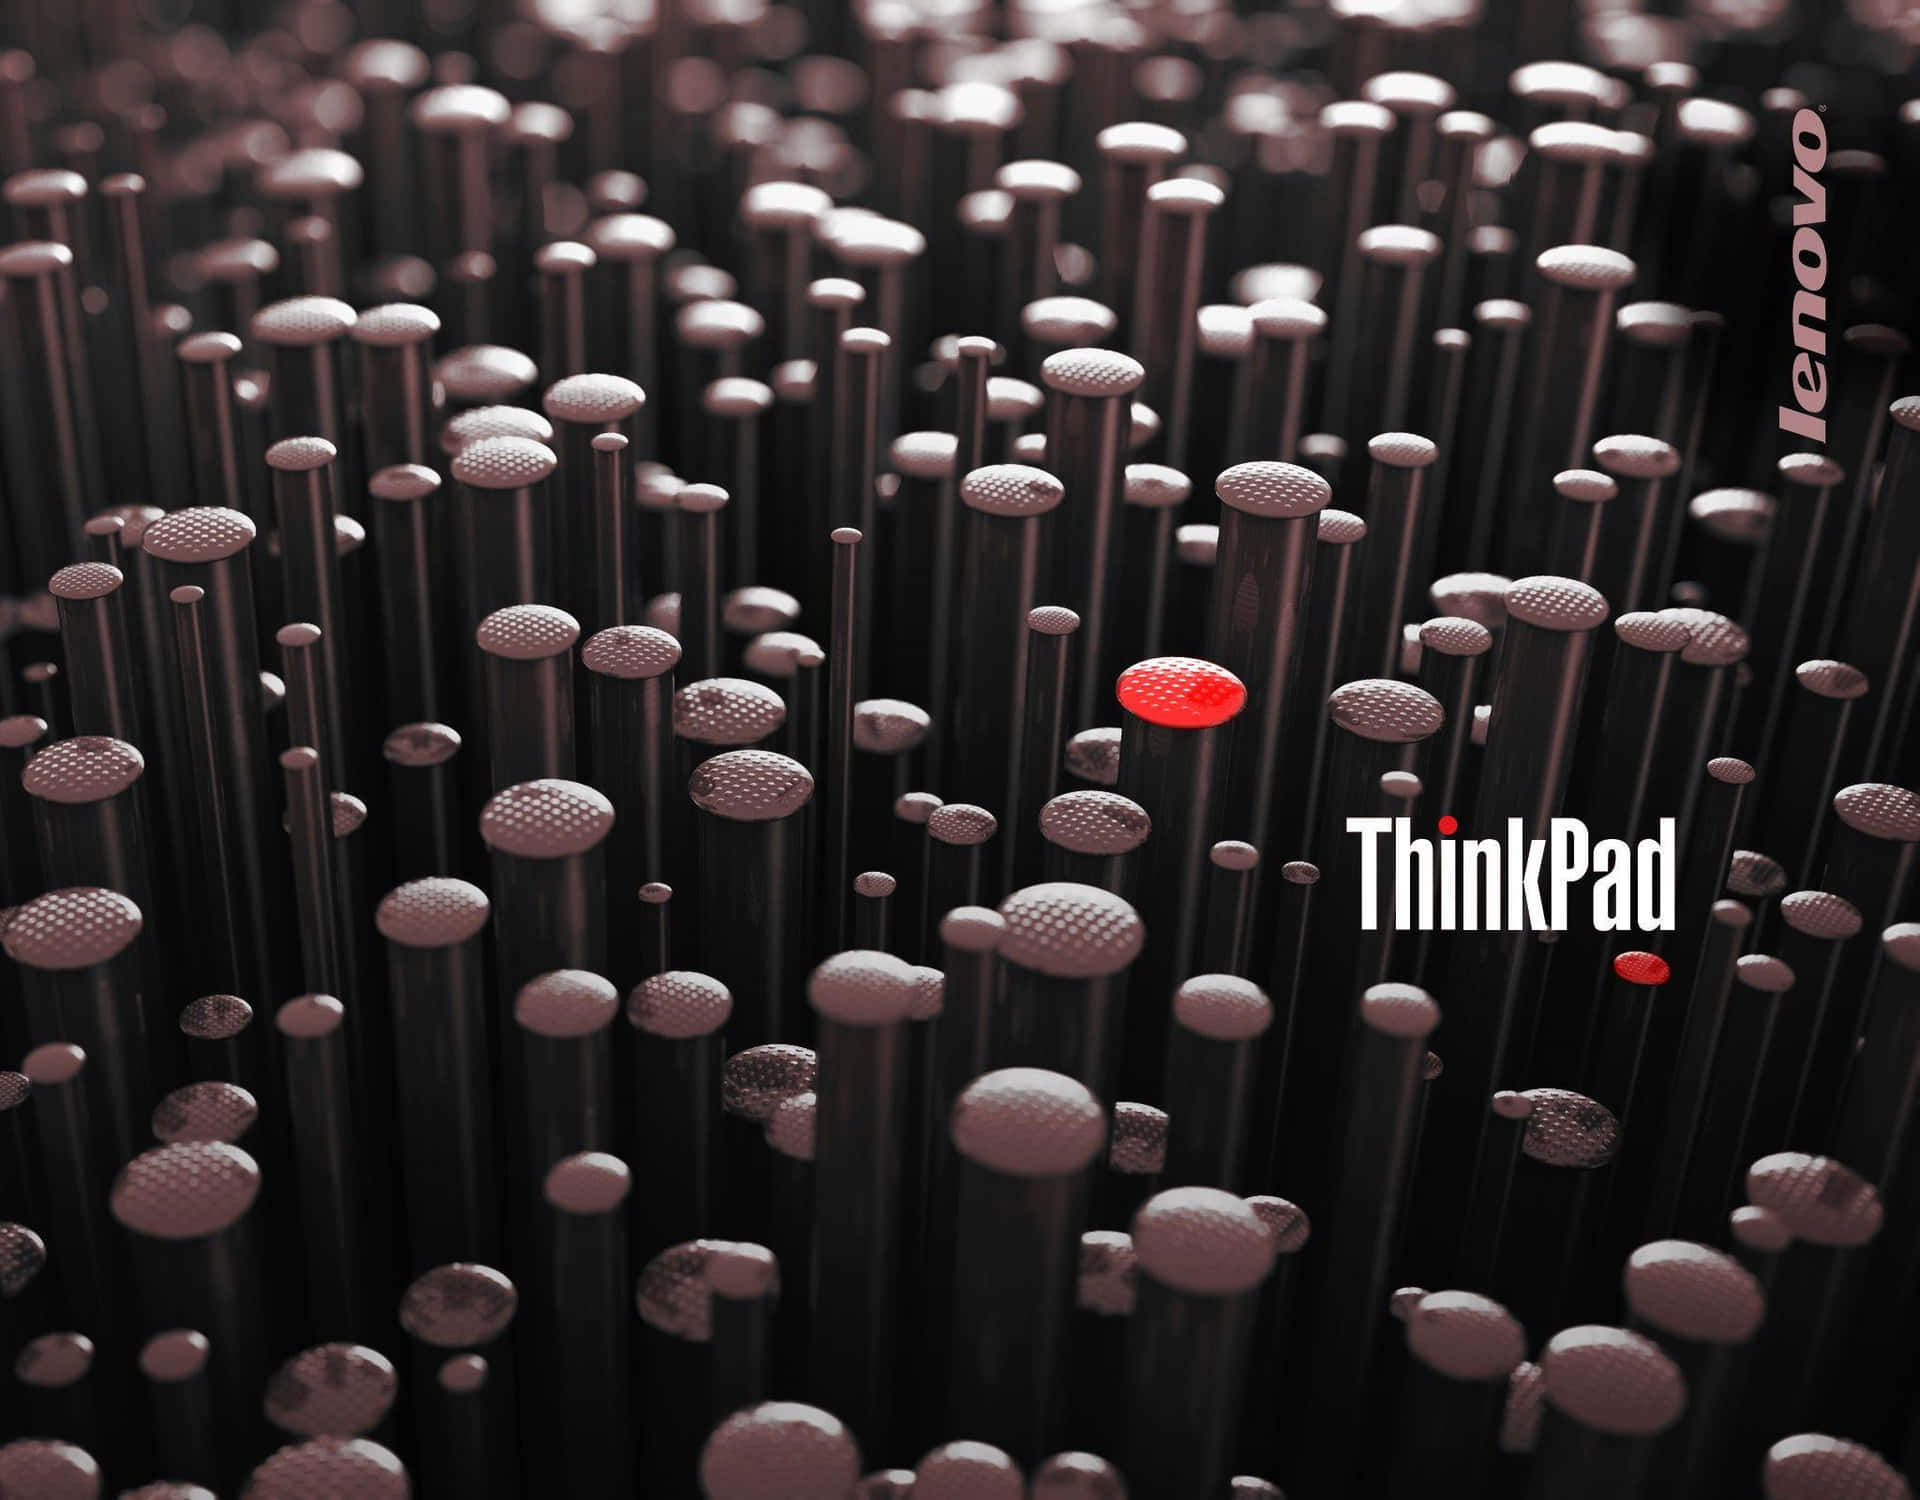 Think Pad Abstract Pin Art Advertisement Wallpaper